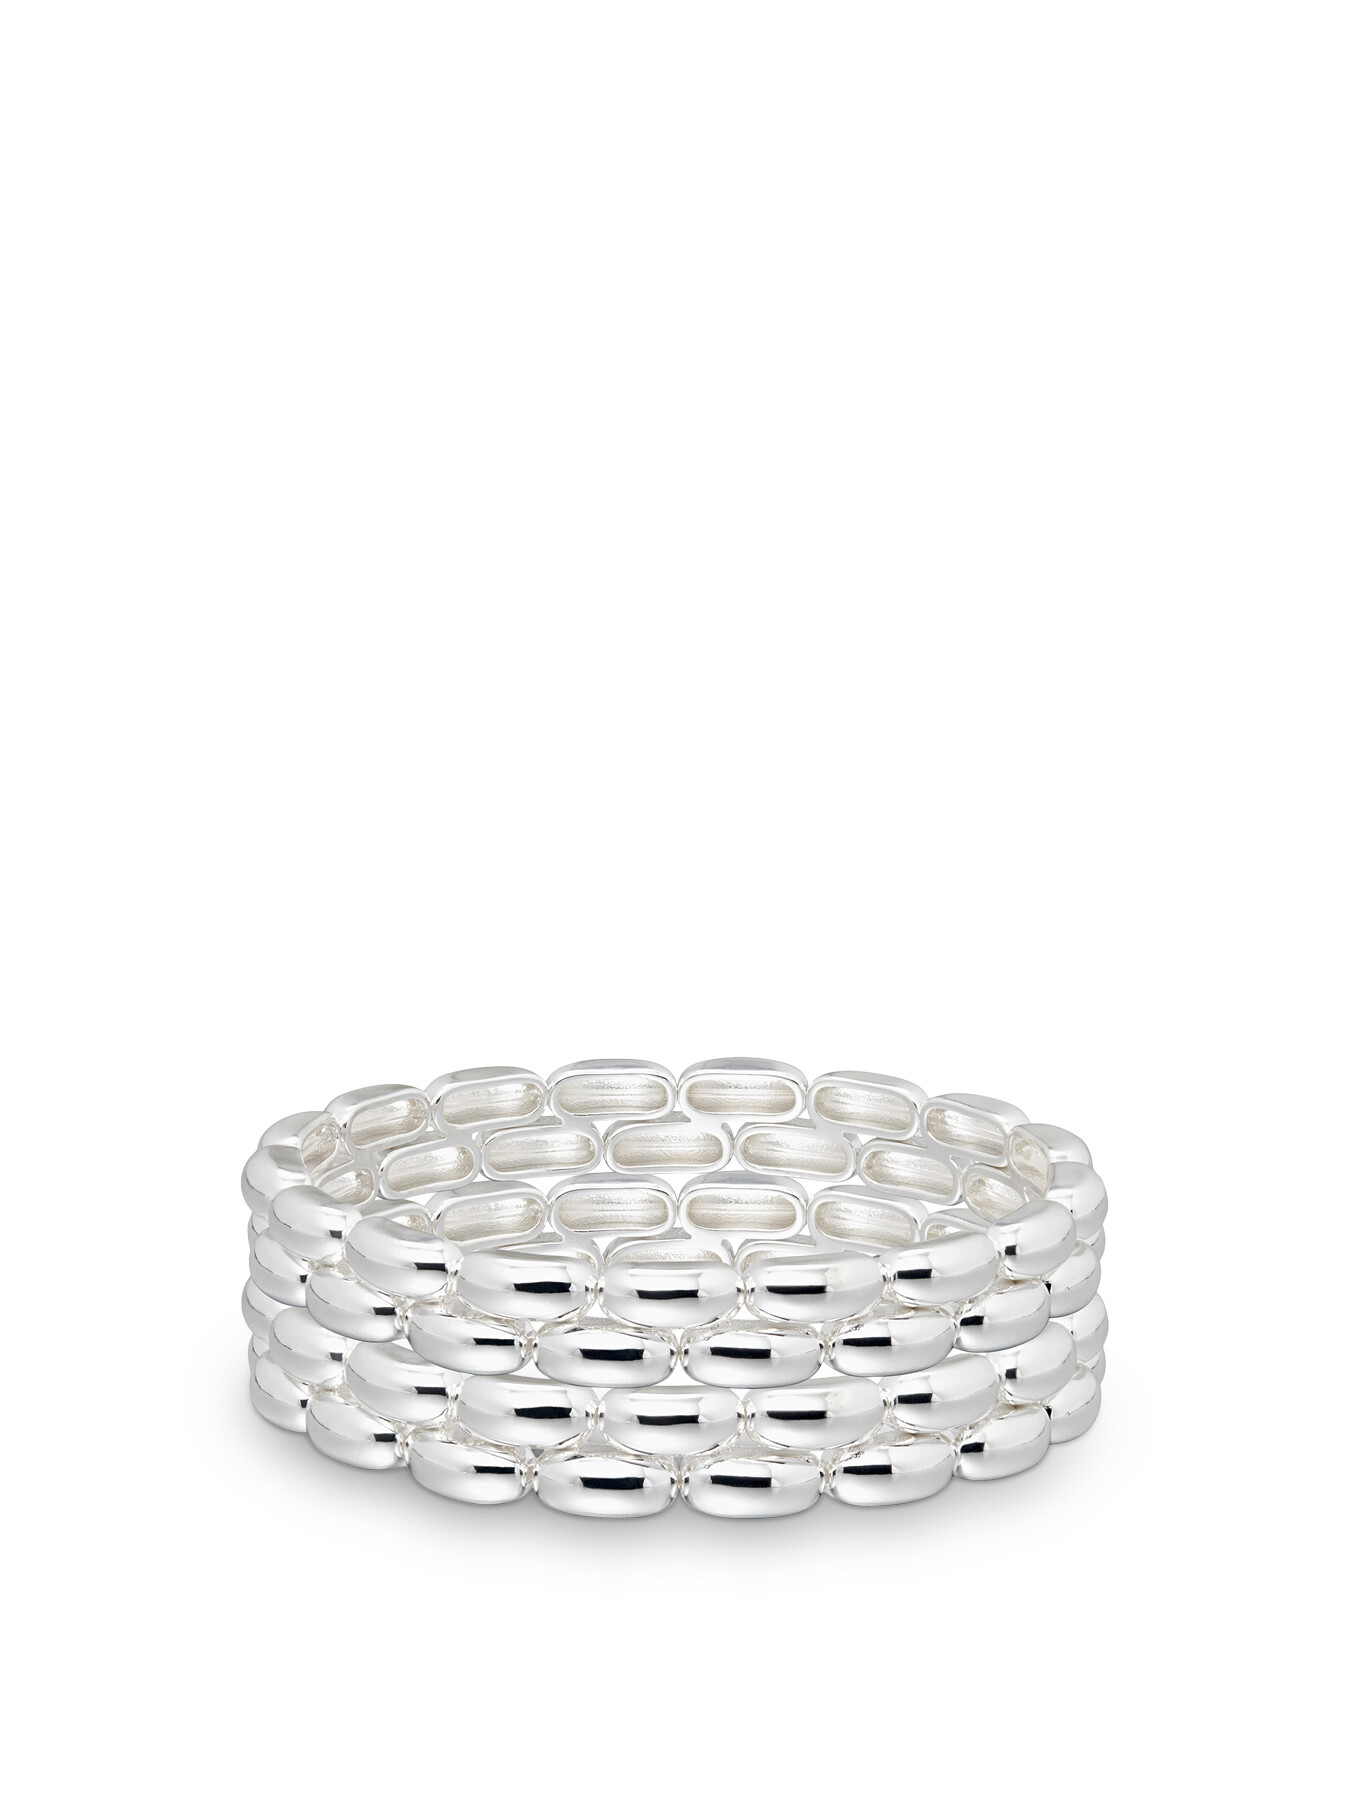 Roxanne Assoulin Women's The Pillow Bracelets In Silver